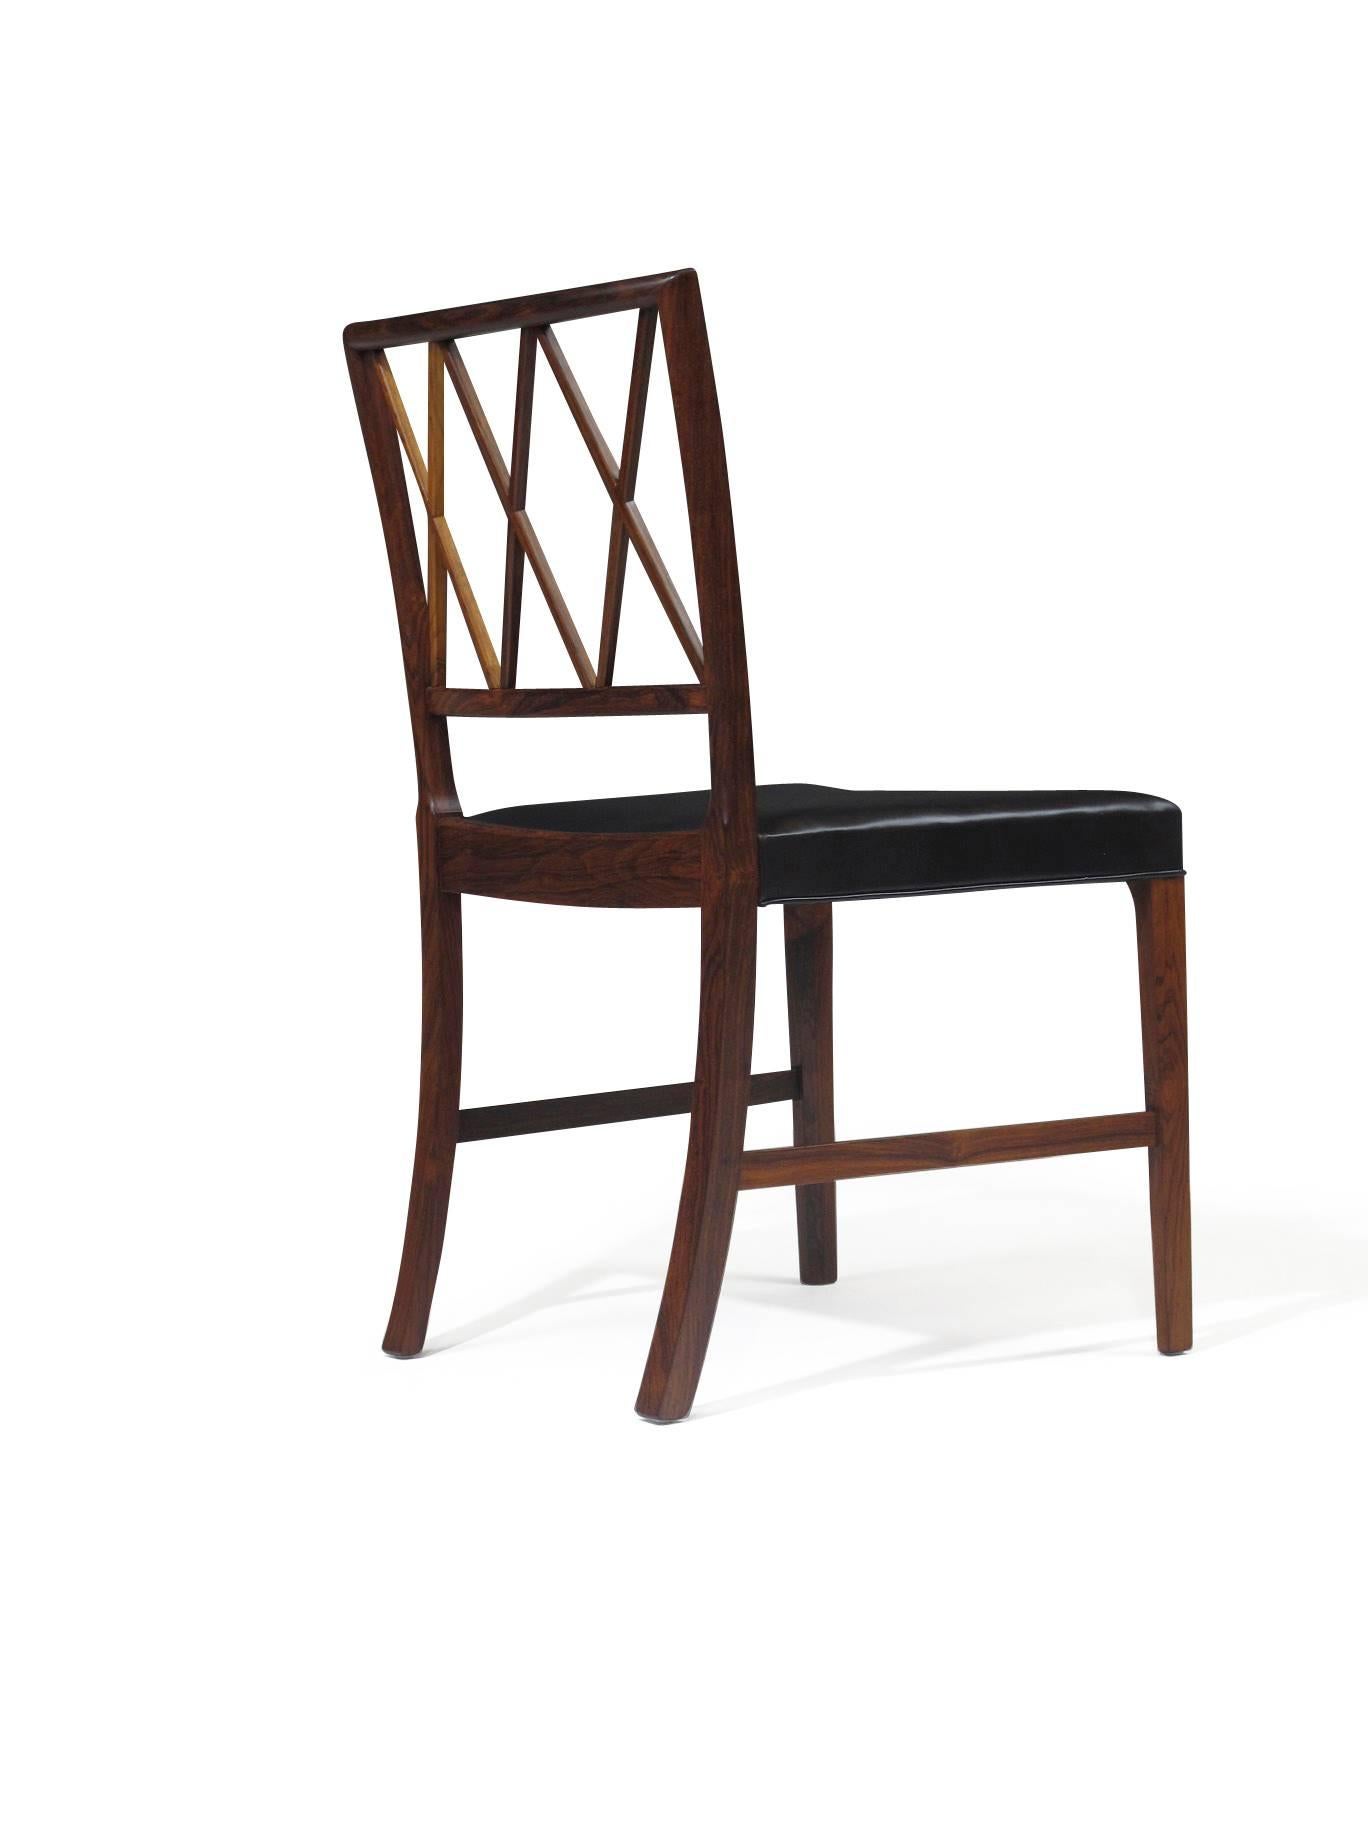 Sechs Esszimmerstühle aus brasilianischem Palisanderholz, entworfen von Ole Wanscher für A.J. Iversen im Jahr 1942. Perfekt restauriert und mit feinem schwarzem Leder gepolstert.